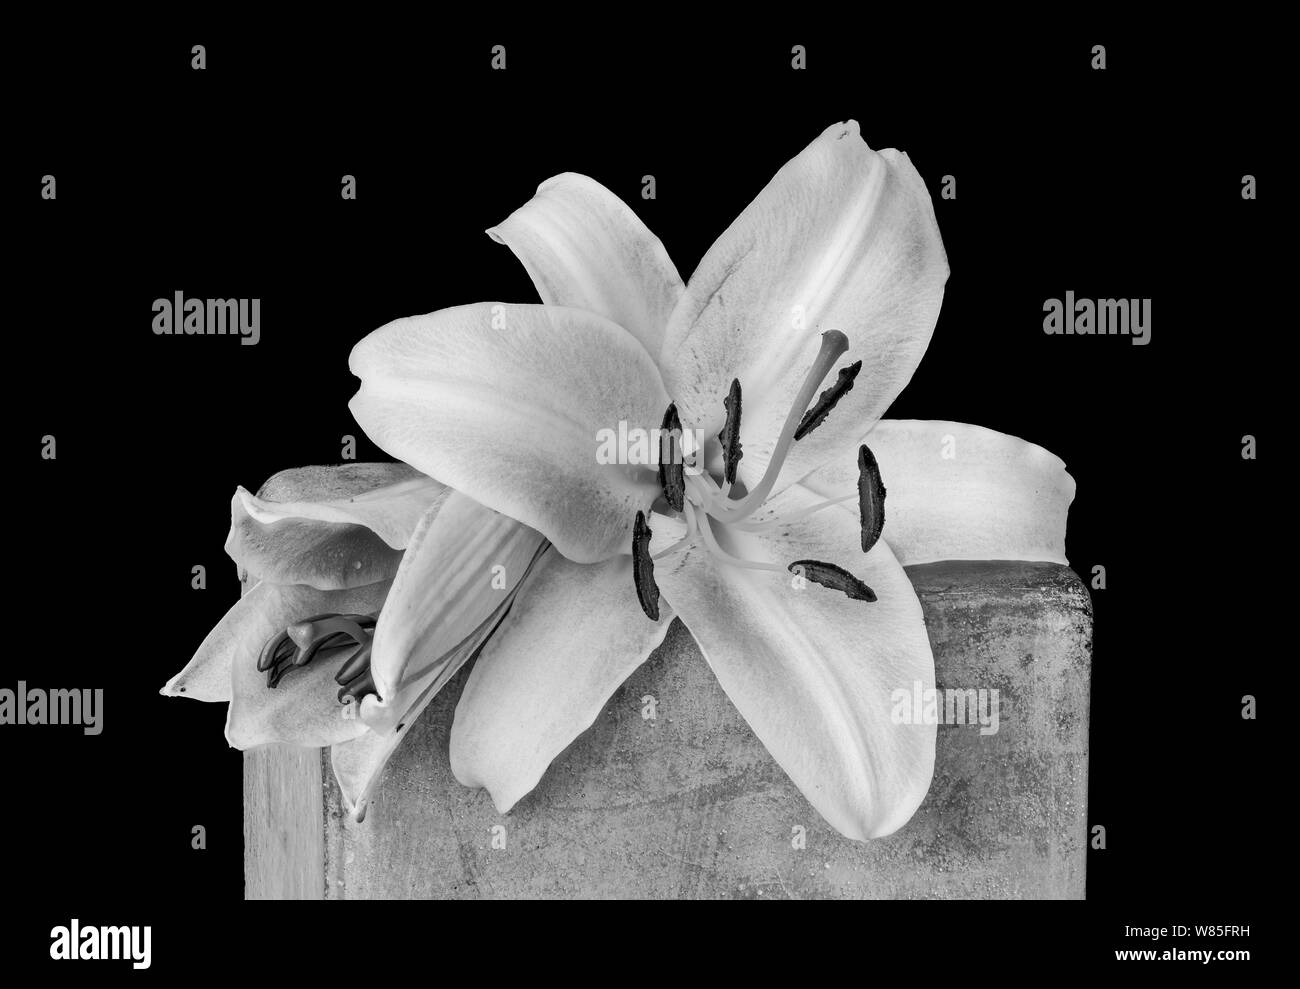 Deux fleurs de lys blanc macro monochrome,sur un cube de béton avec des gouttelettes d'eau.texture détaillées sur fond noir dans un style de peinture vintage Banque D'Images